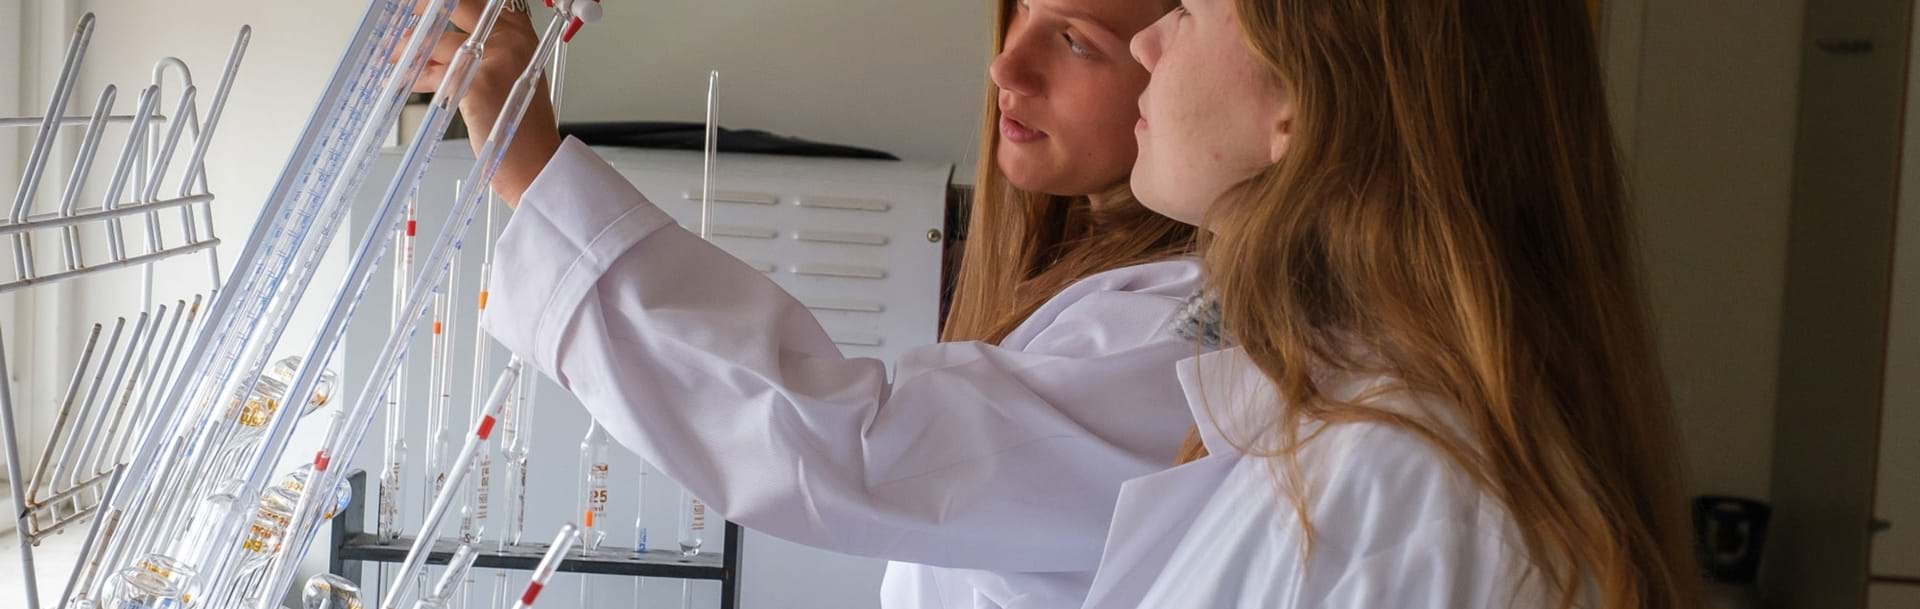 To piger arbejder i kemilokalet